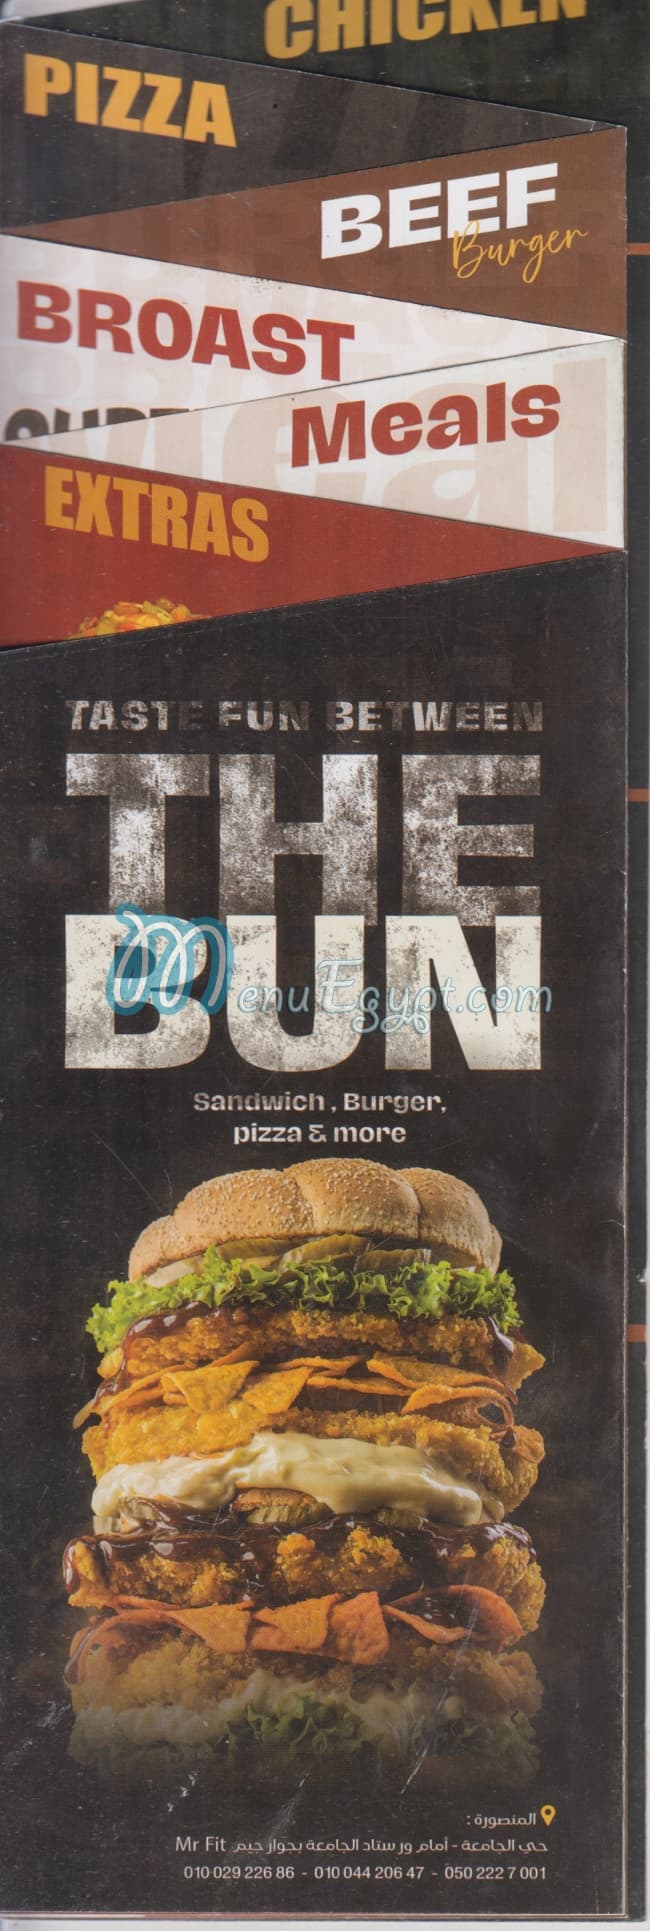 The Bun menu